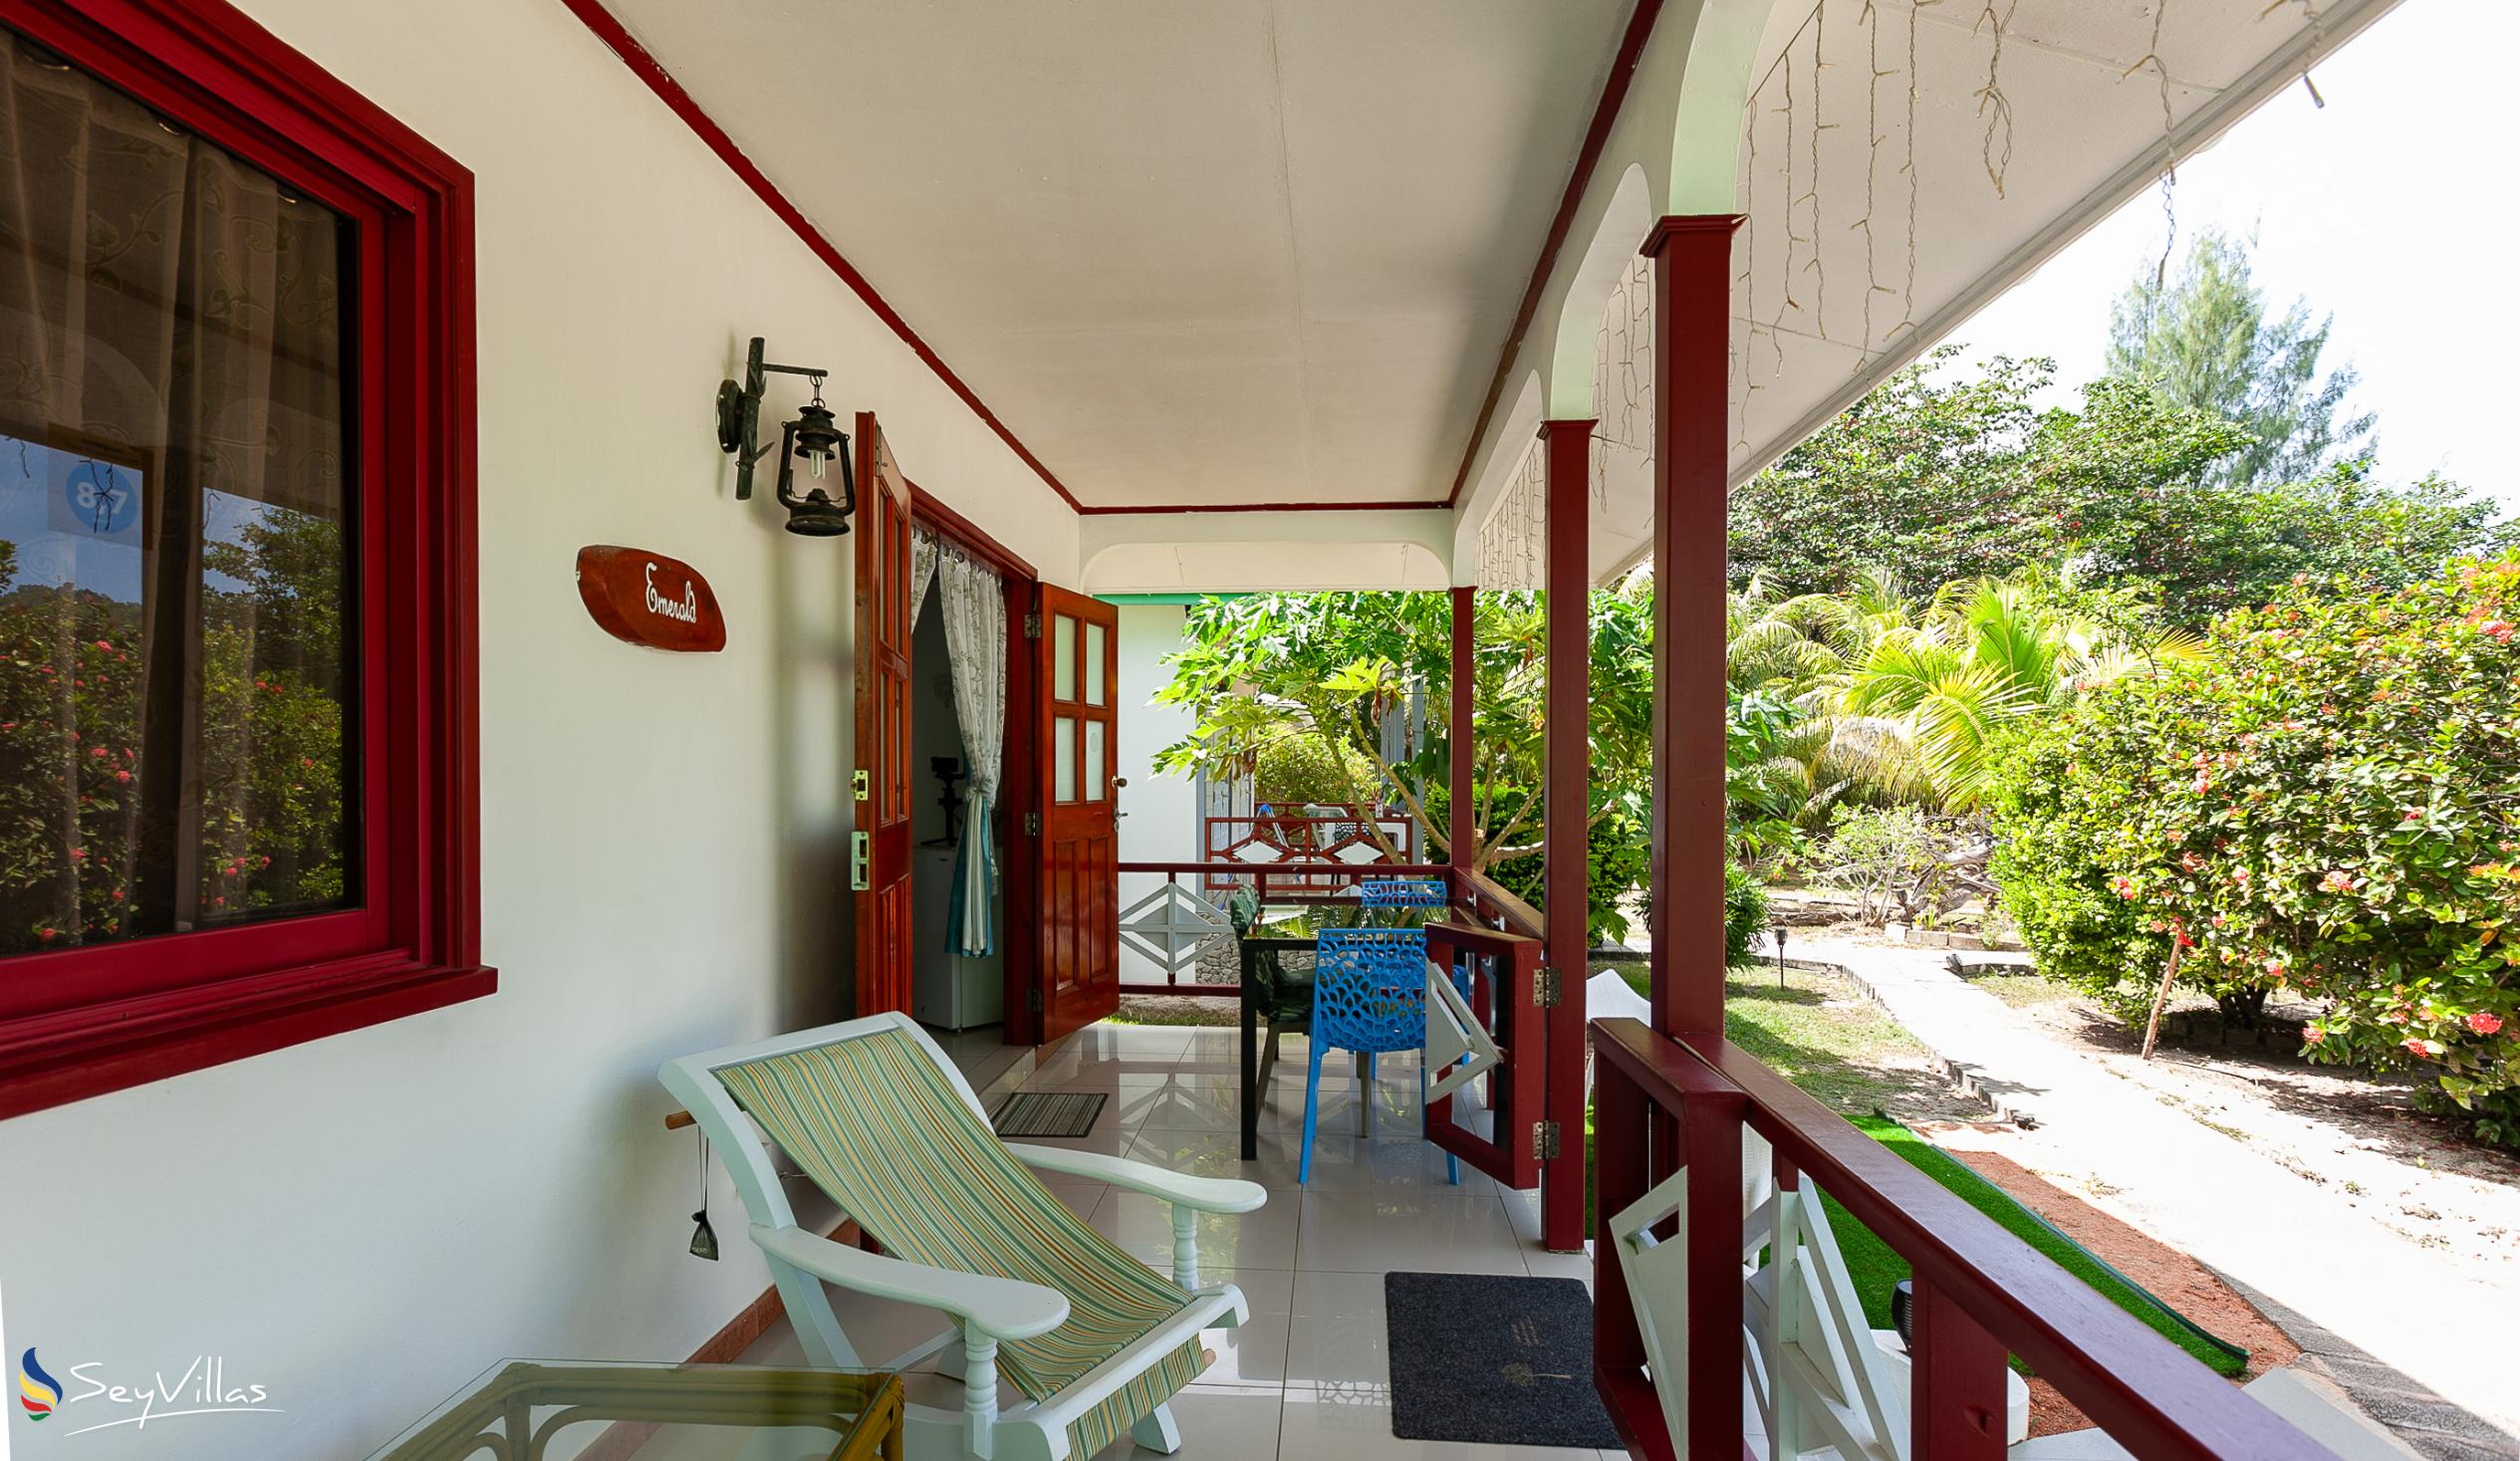 Photo 91: Agnes Cottage - Emerald House - La Digue (Seychelles)